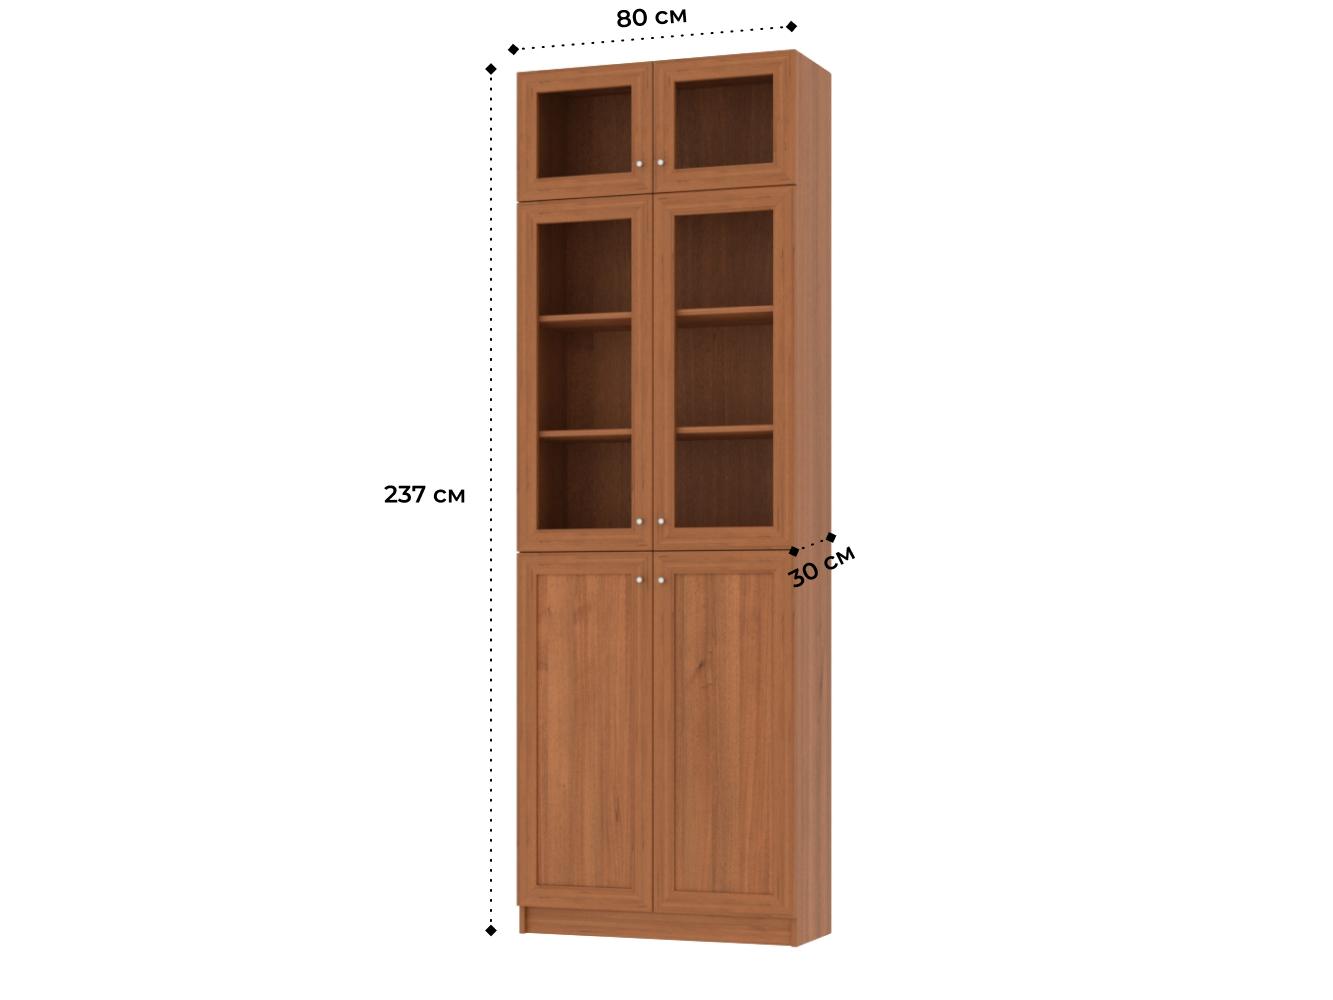 Изображение товара Книжный шкаф Билли 36 walnut guarneri ИКЕА (IKEA), 80x30x237 см на сайте adeta.ru